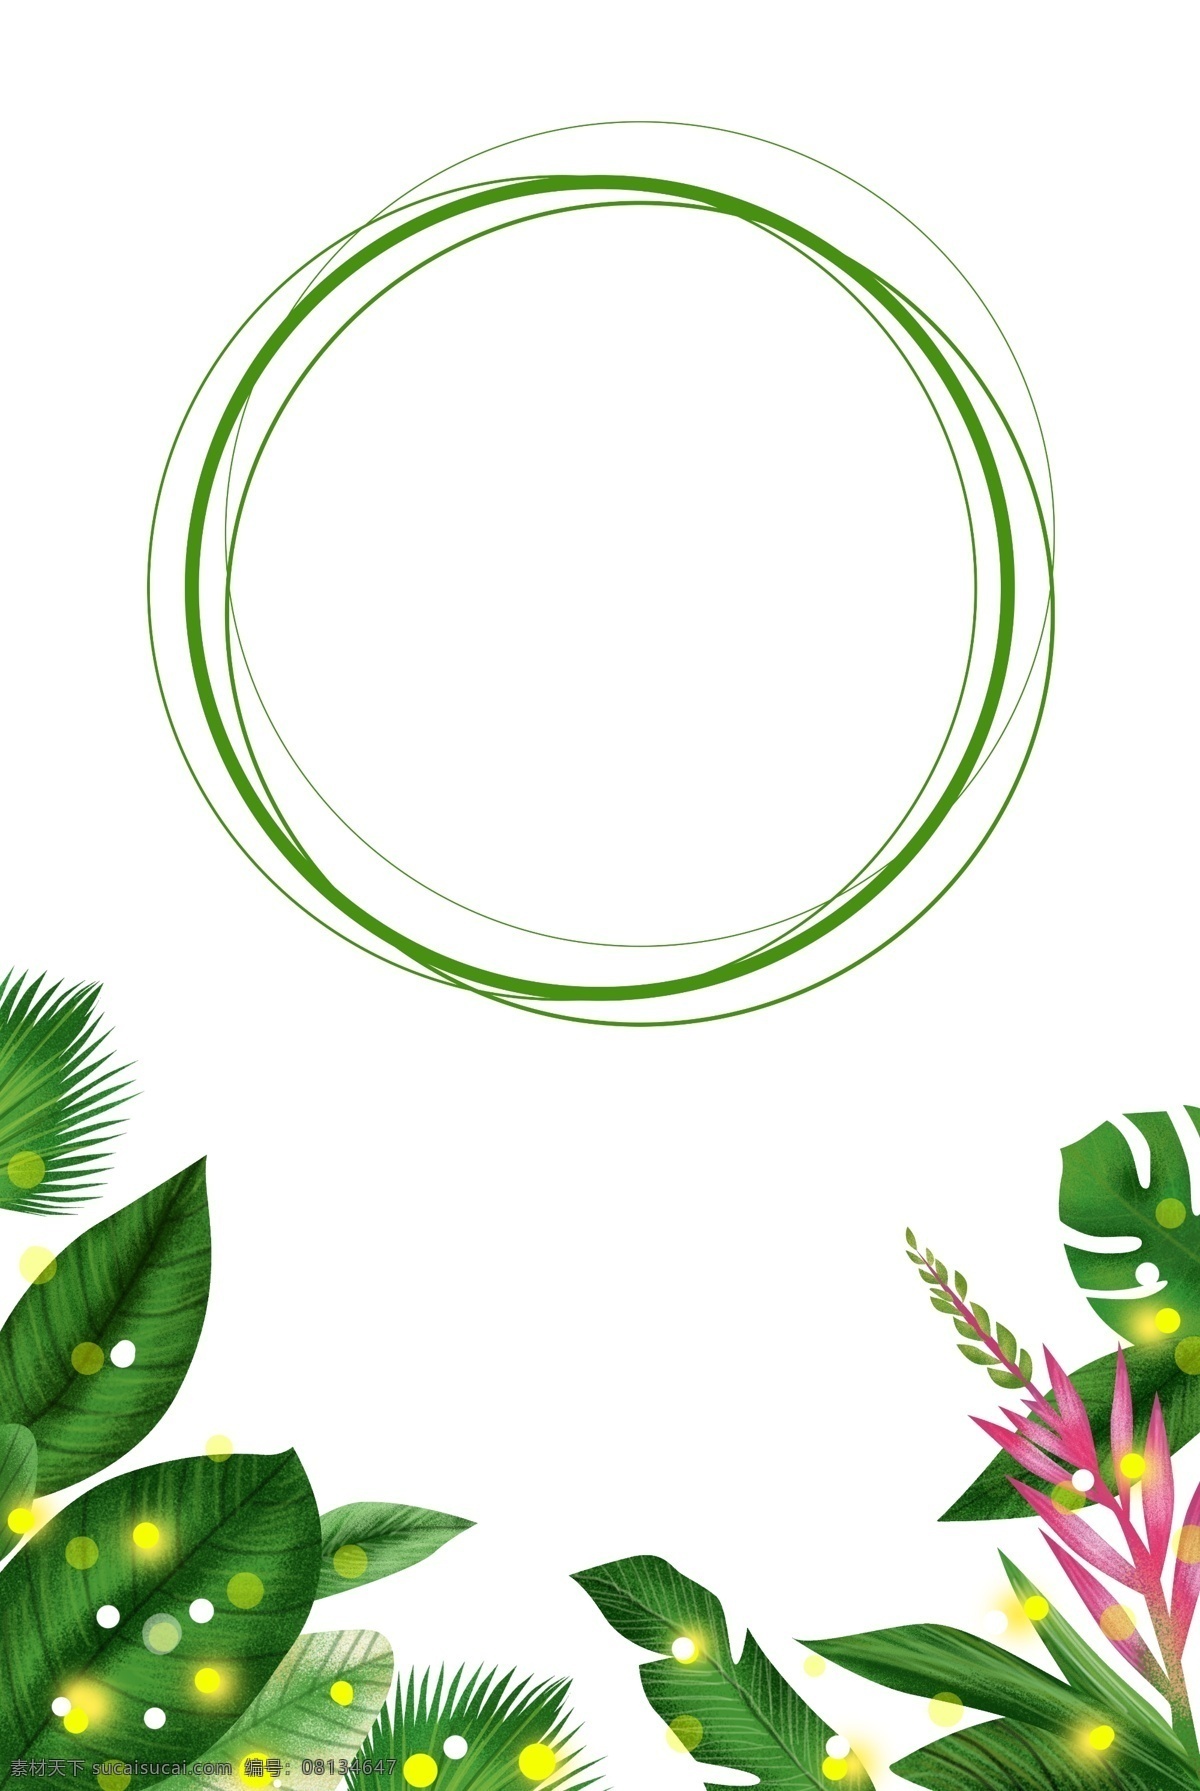 春天 植物 叶子 边框 绿色 圆形 绿植 光 海报边框 绿色边框 手绘 插画 立春 踏青 自然 深绿